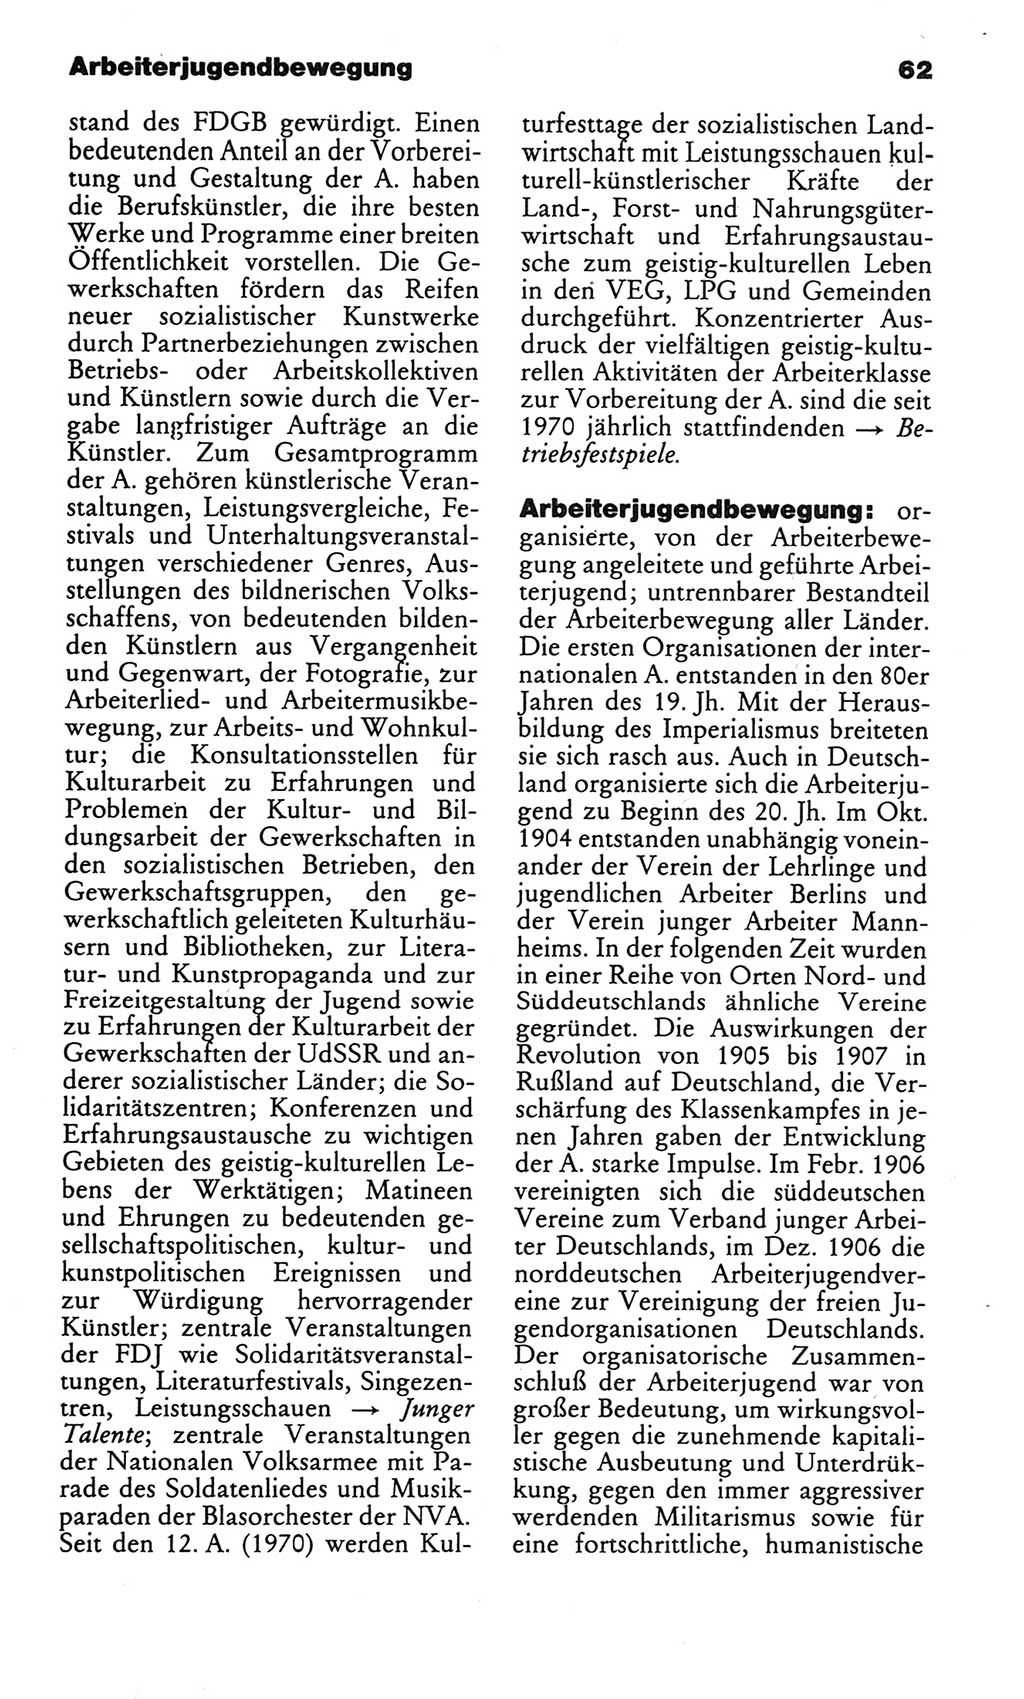 Kleines politisches Wörterbuch [Deutsche Demokratische Republik (DDR)] 1986, Seite 62 (Kl. pol. Wb. DDR 1986, S. 62)